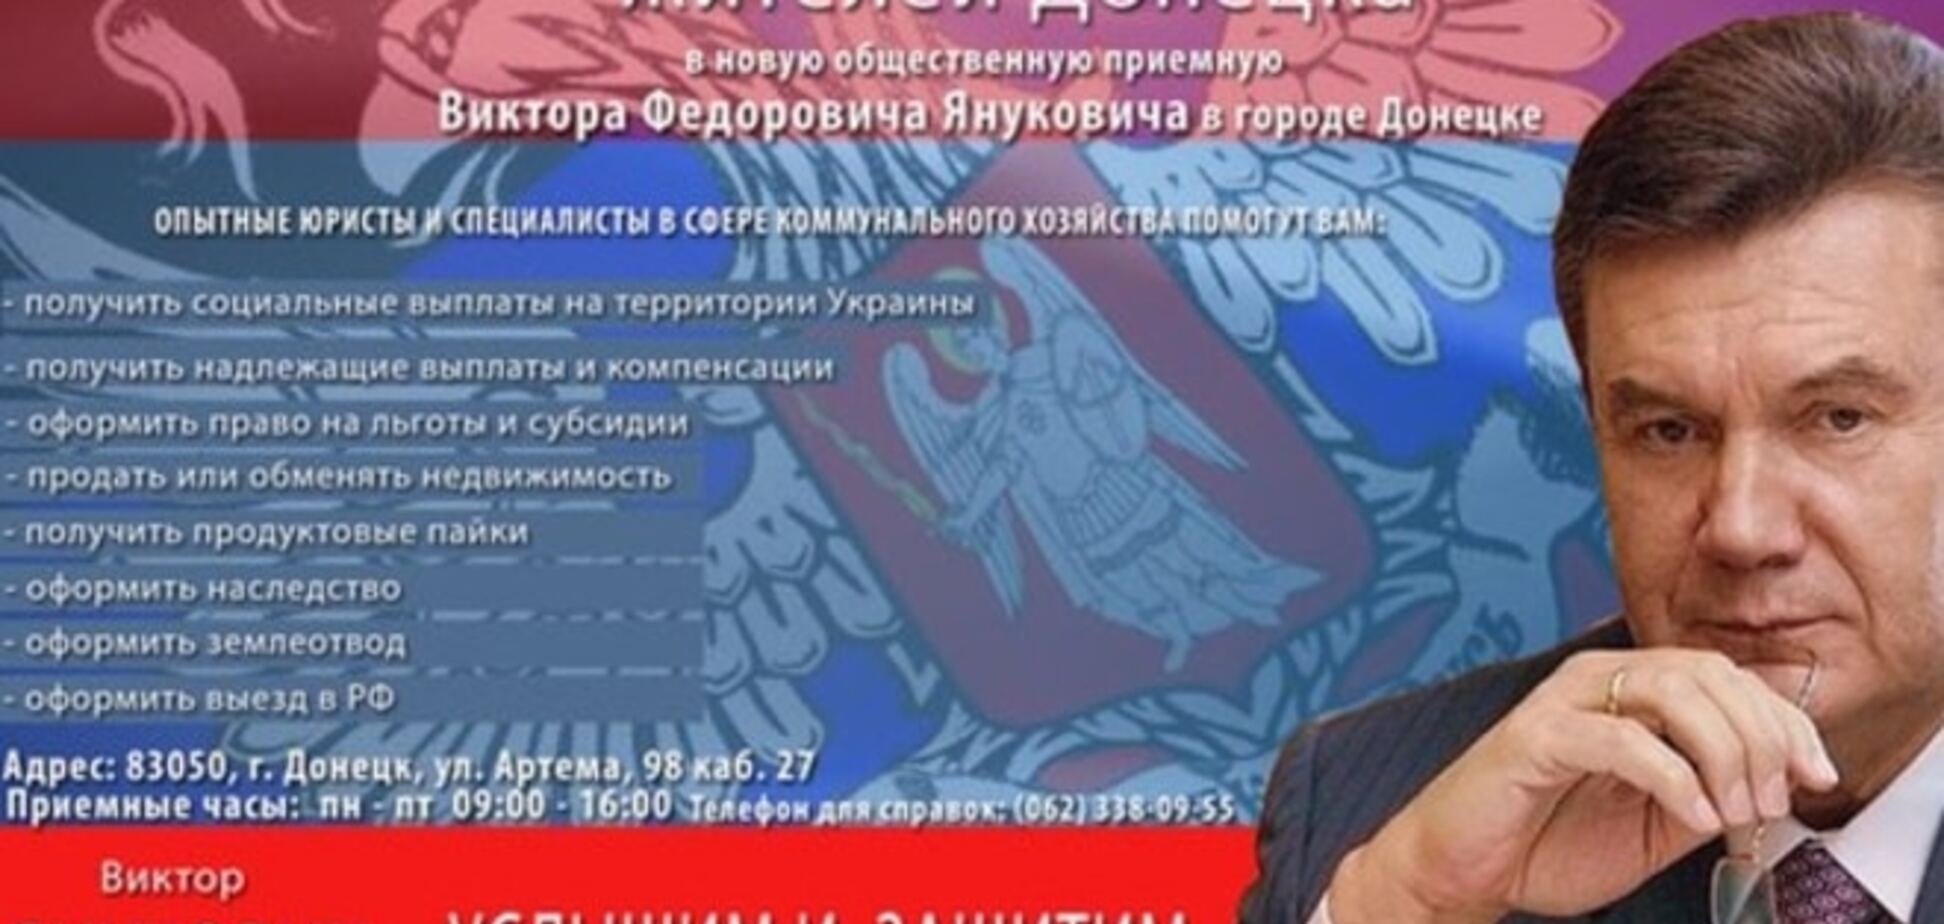 I'll be back! 'Я живий!' Янукович матеріалізувався на агітках Донбасу: фотофакт